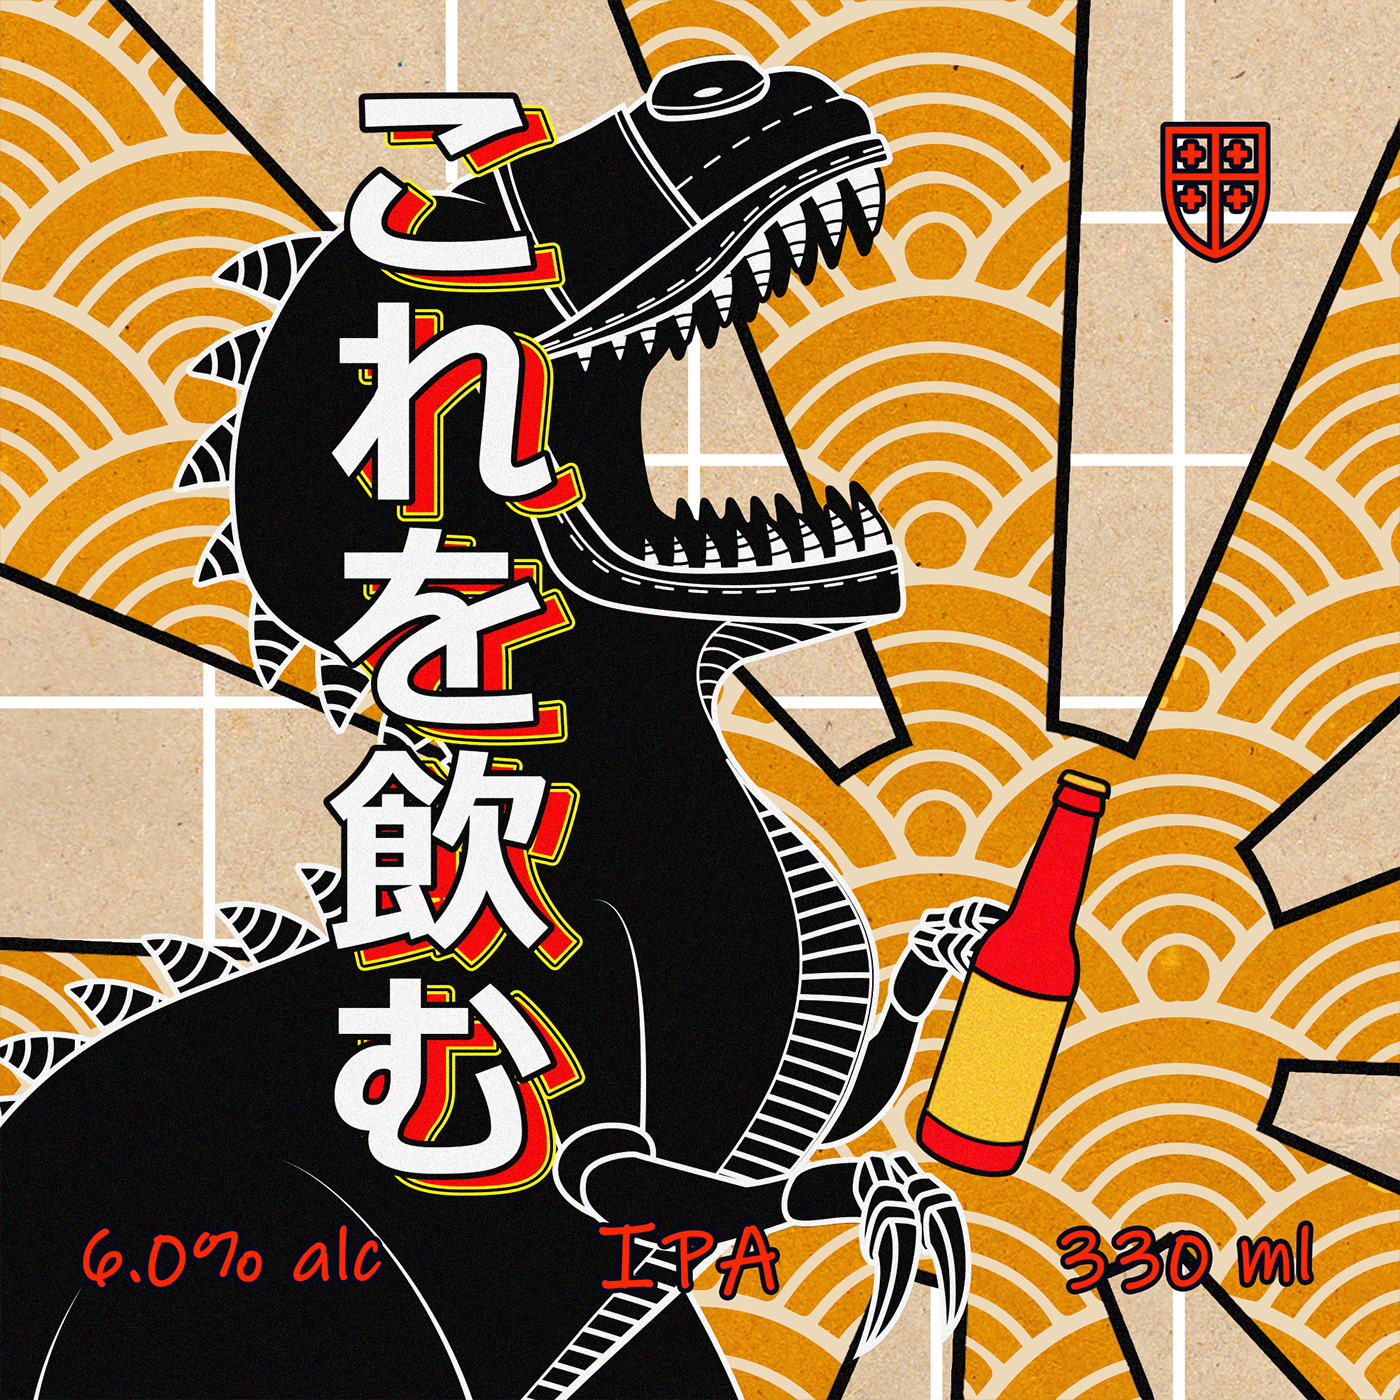 kvachi godzila beer etiquette asian manga japanese Style Dinosaur drunk